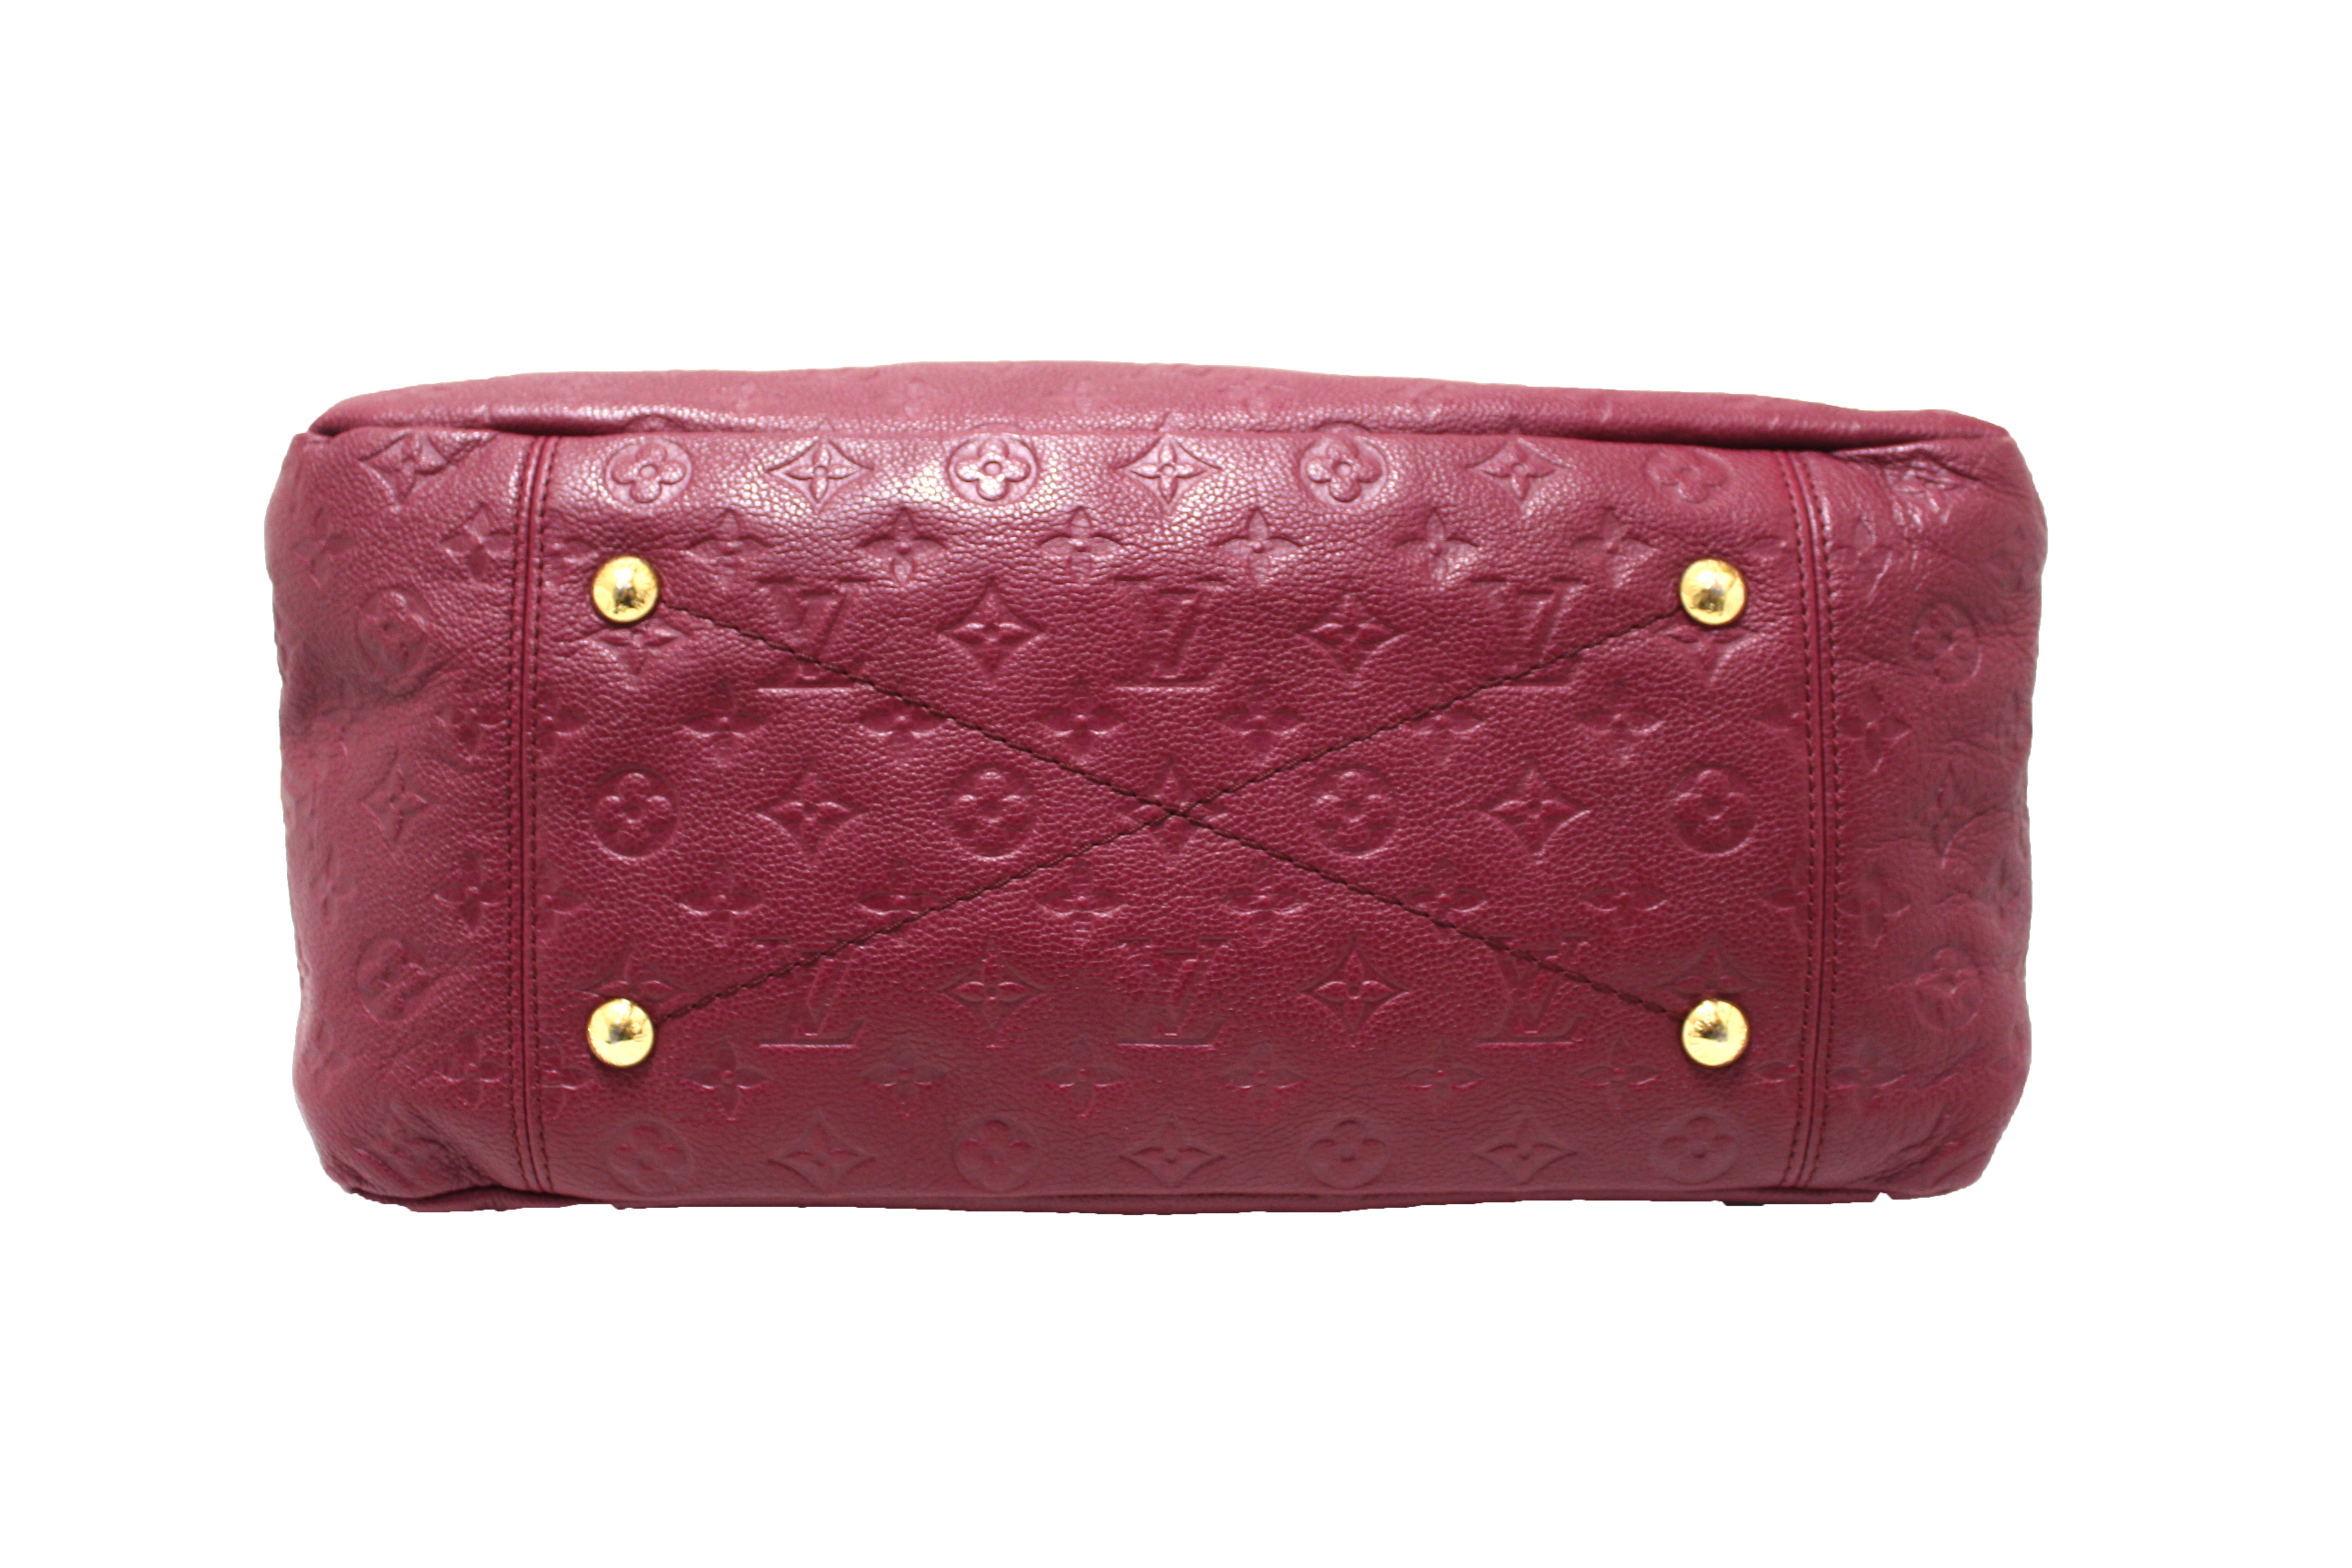 Authentic Louis Vuitton Monogram Artsy MM Hobo Shoulder Handbag